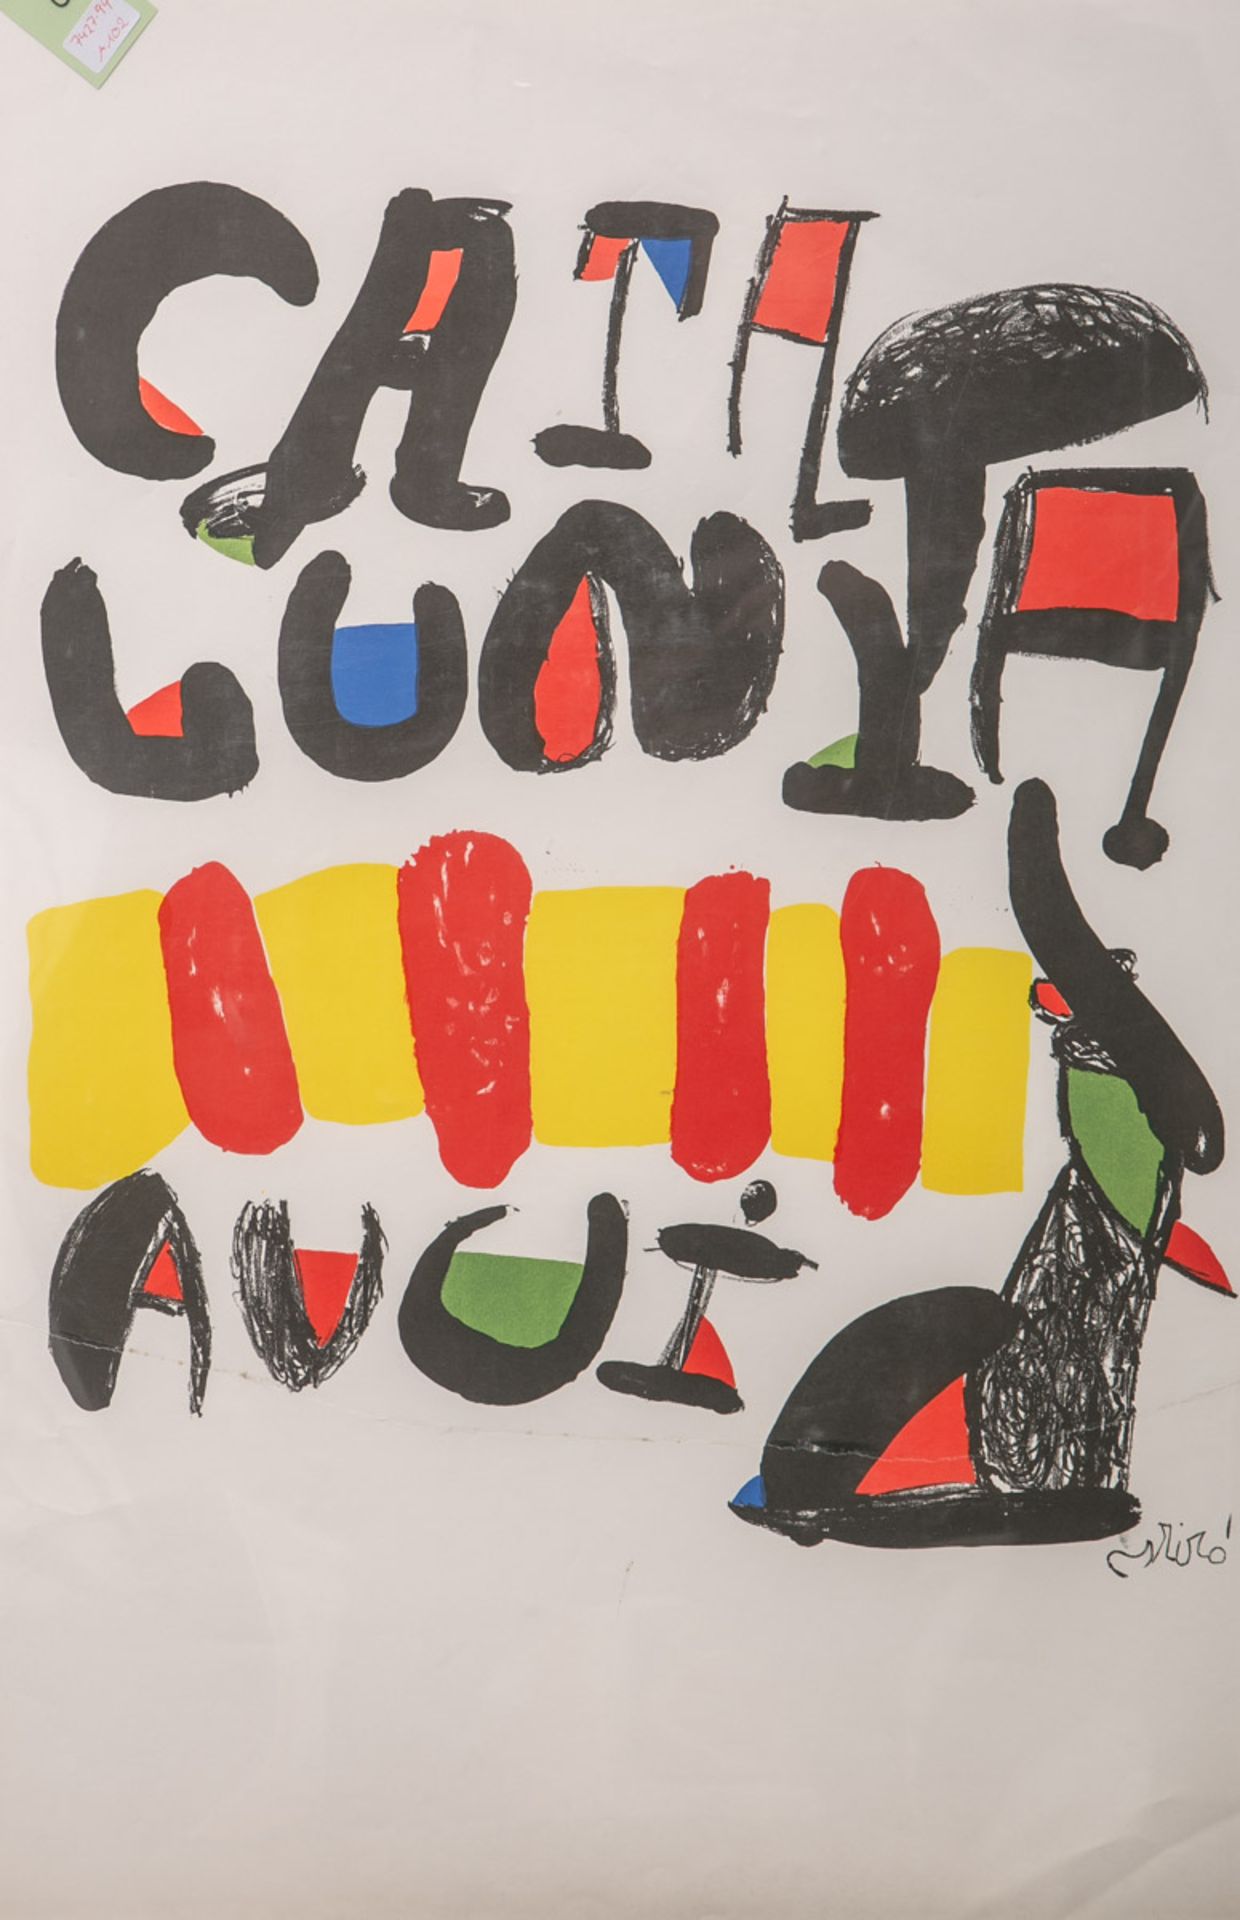 Miró, Joan (1893 - 1983), "Catalunya